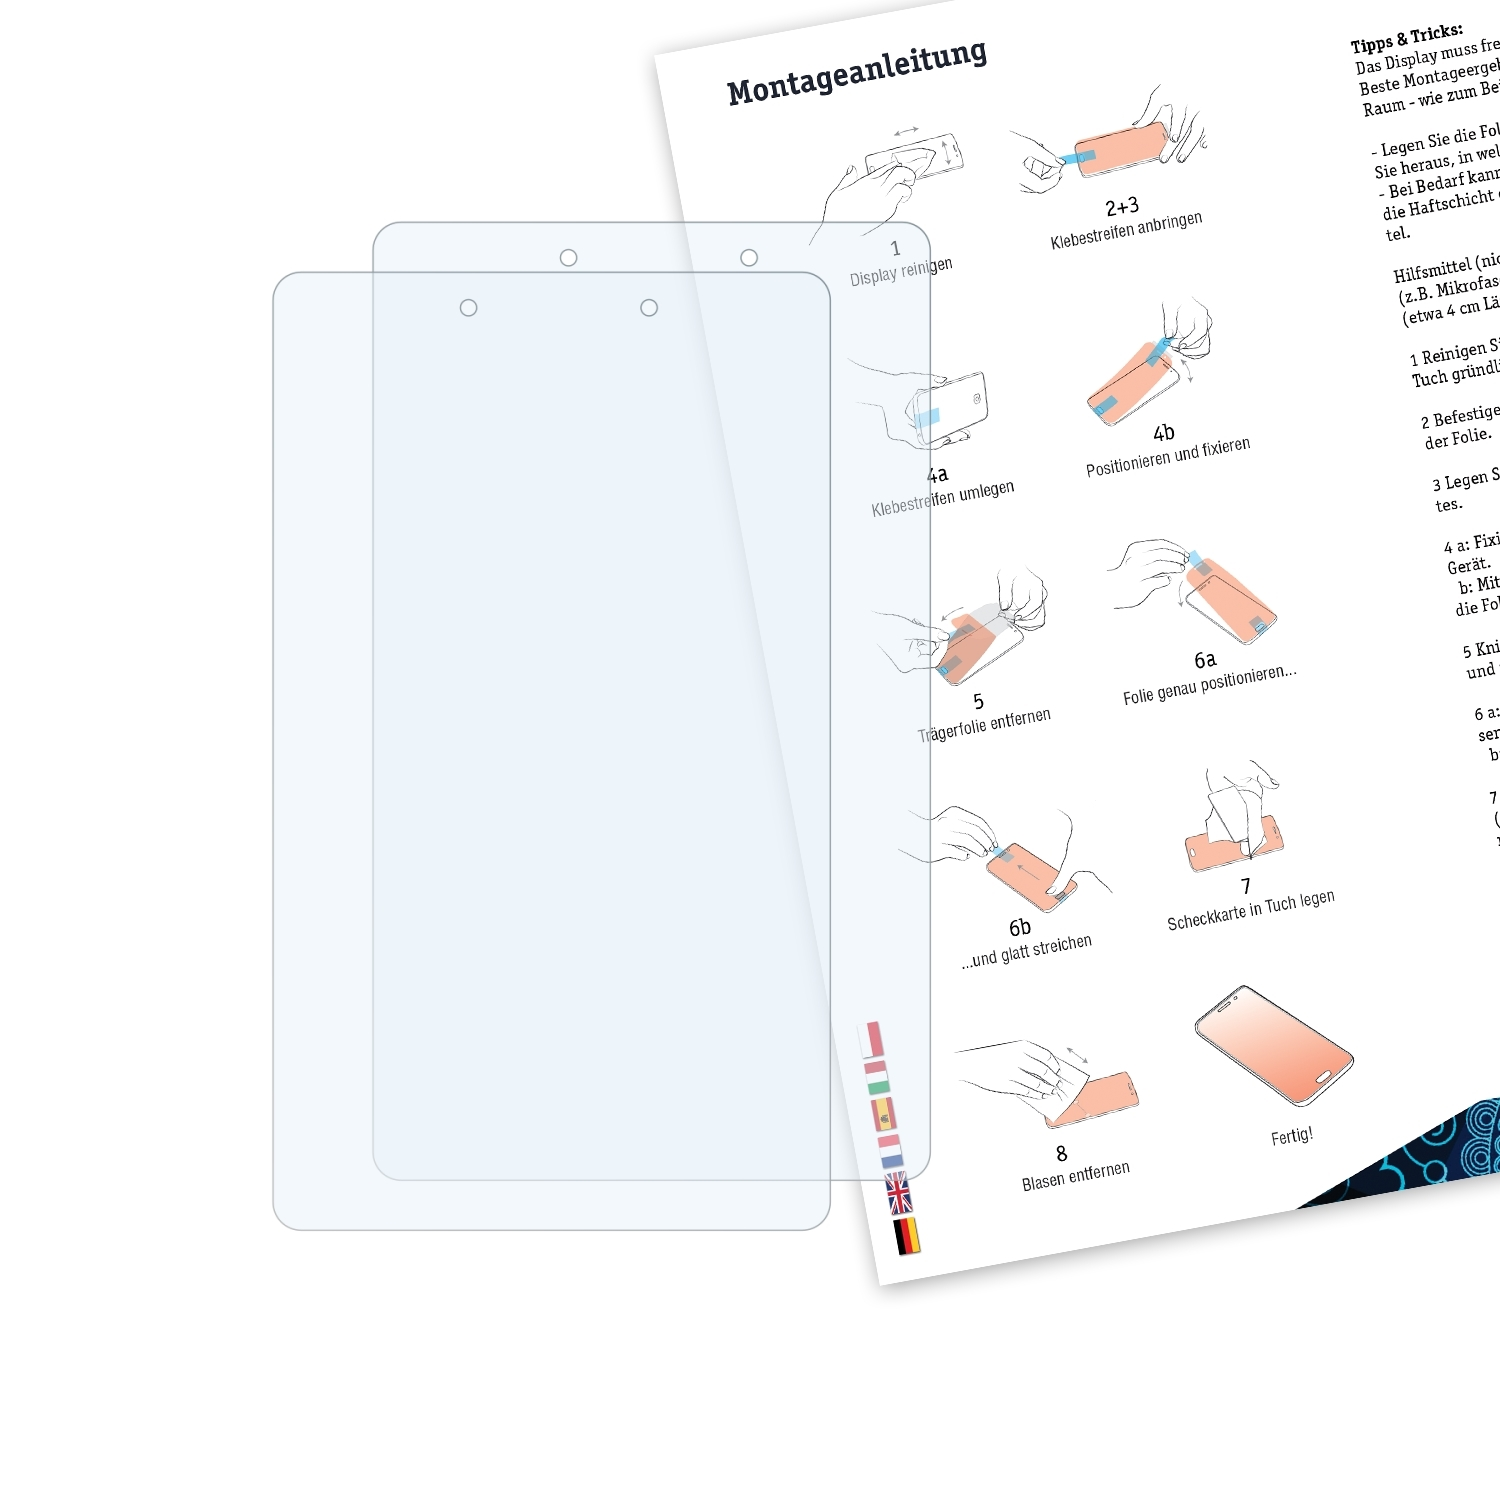 BRUNI 2x Basics-Clear Schutzfolie(für A Tab (8.0 Samsung (2019) Galaxy inch))